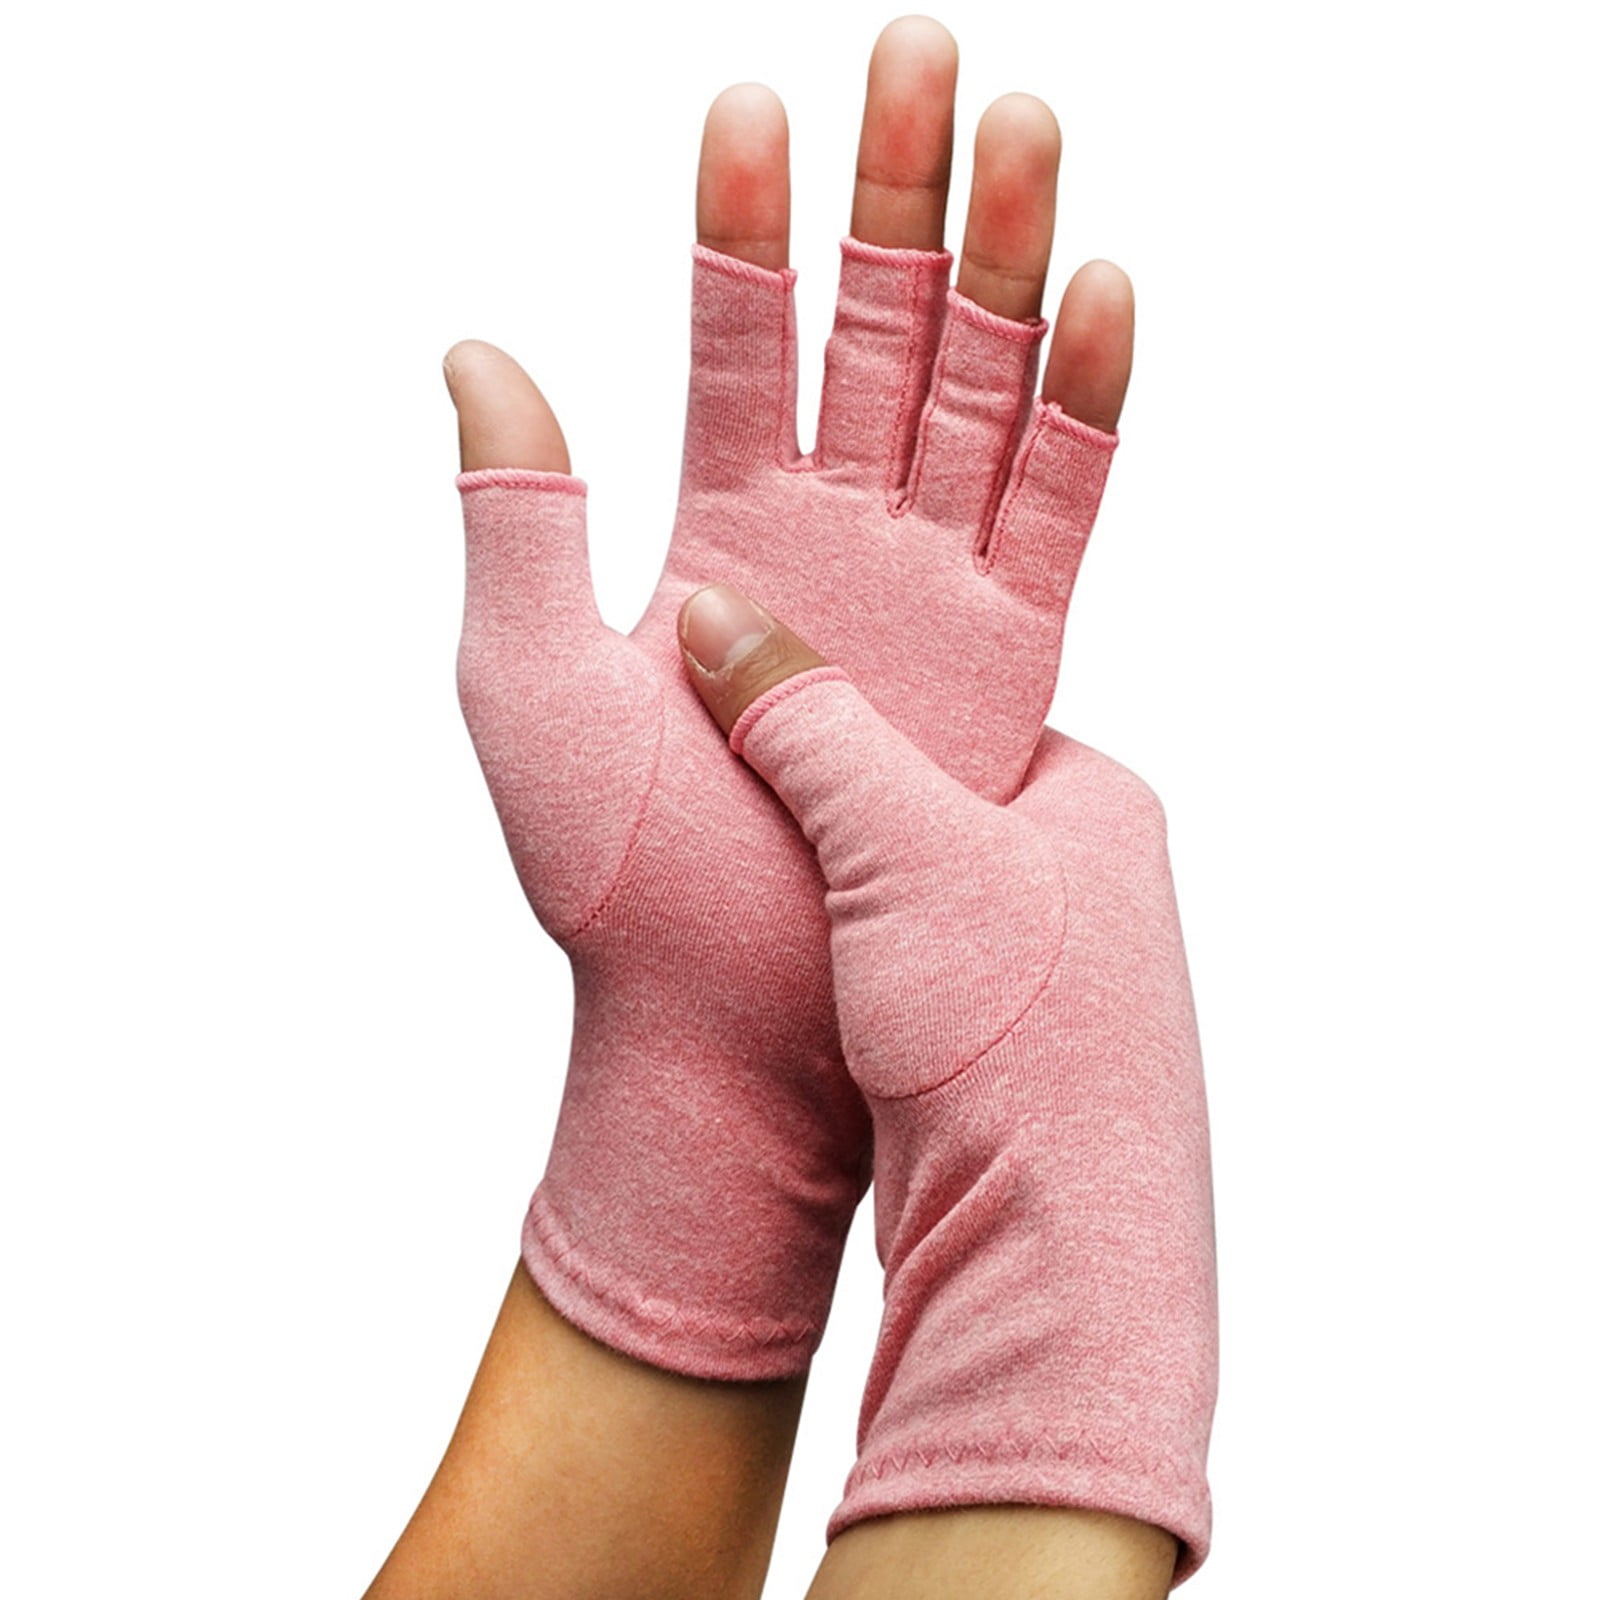 CFR Arthritis Gloves- Open Finger Compression Hand Gloves for ...